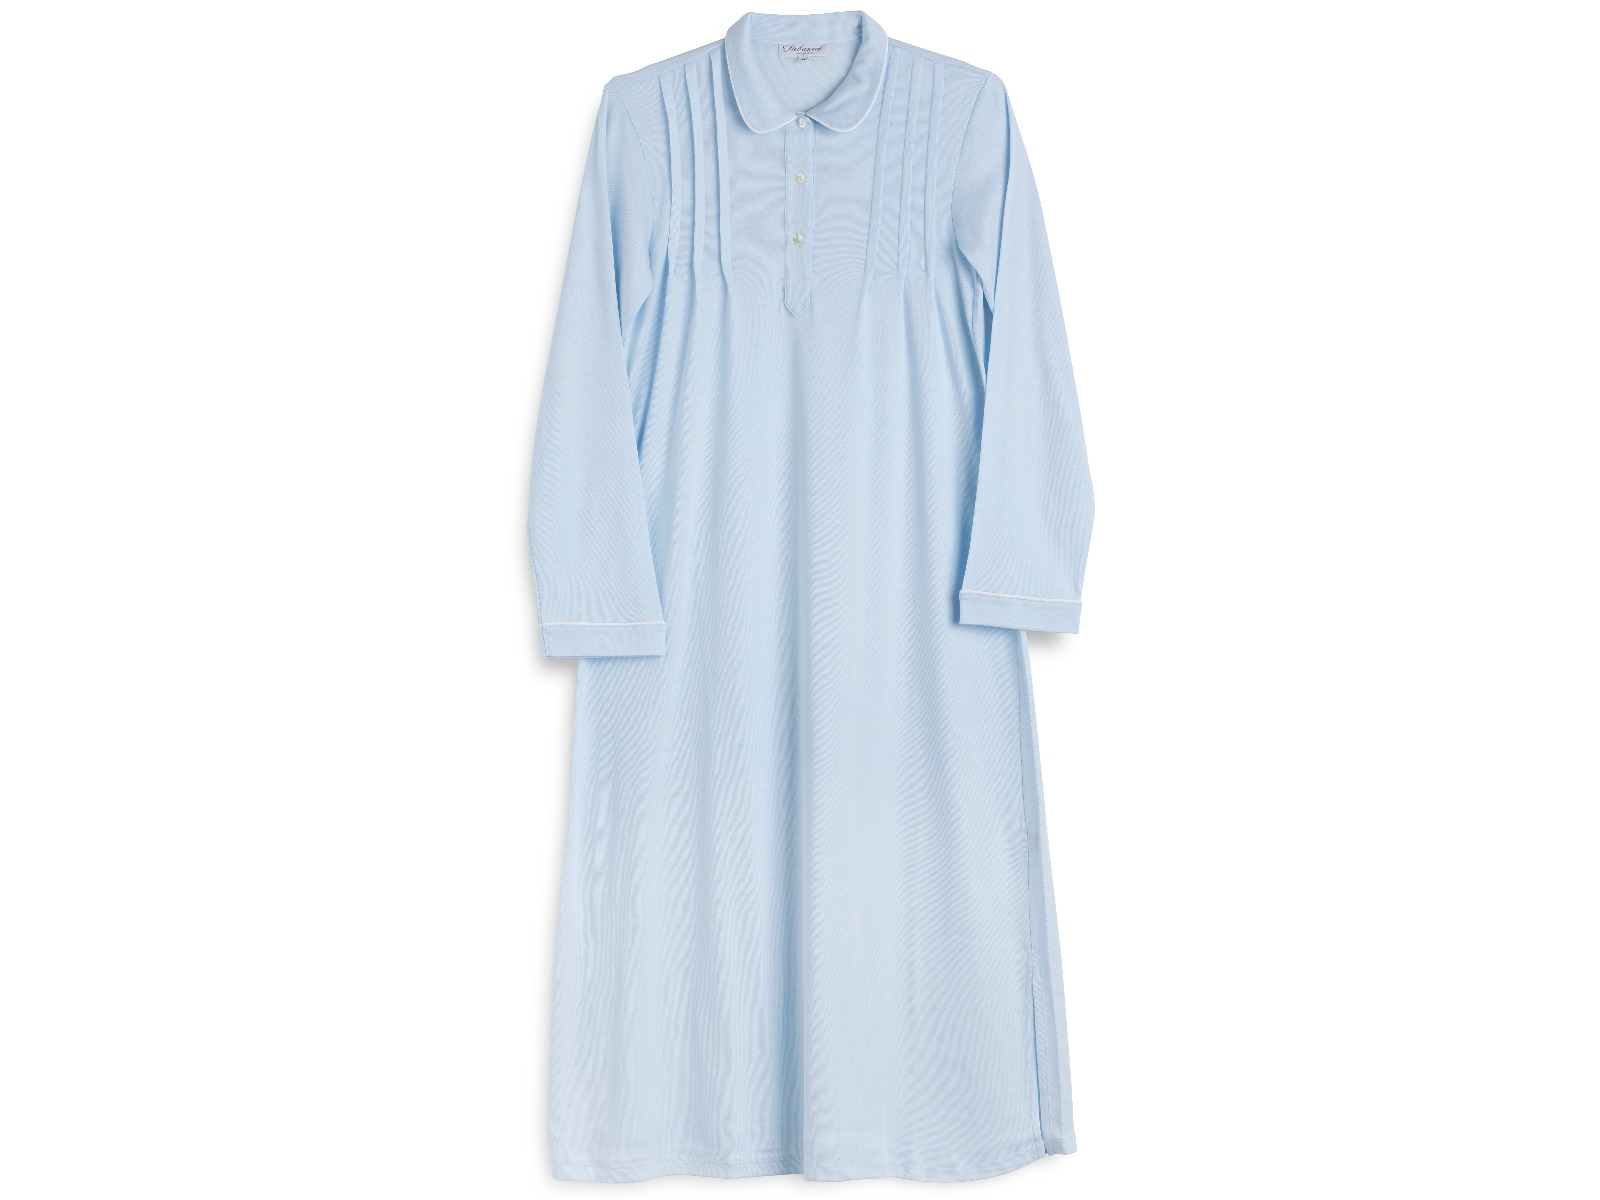 Siebaneck, i pigiami artigianali: - Donna - mod. 6 Donna azzurro